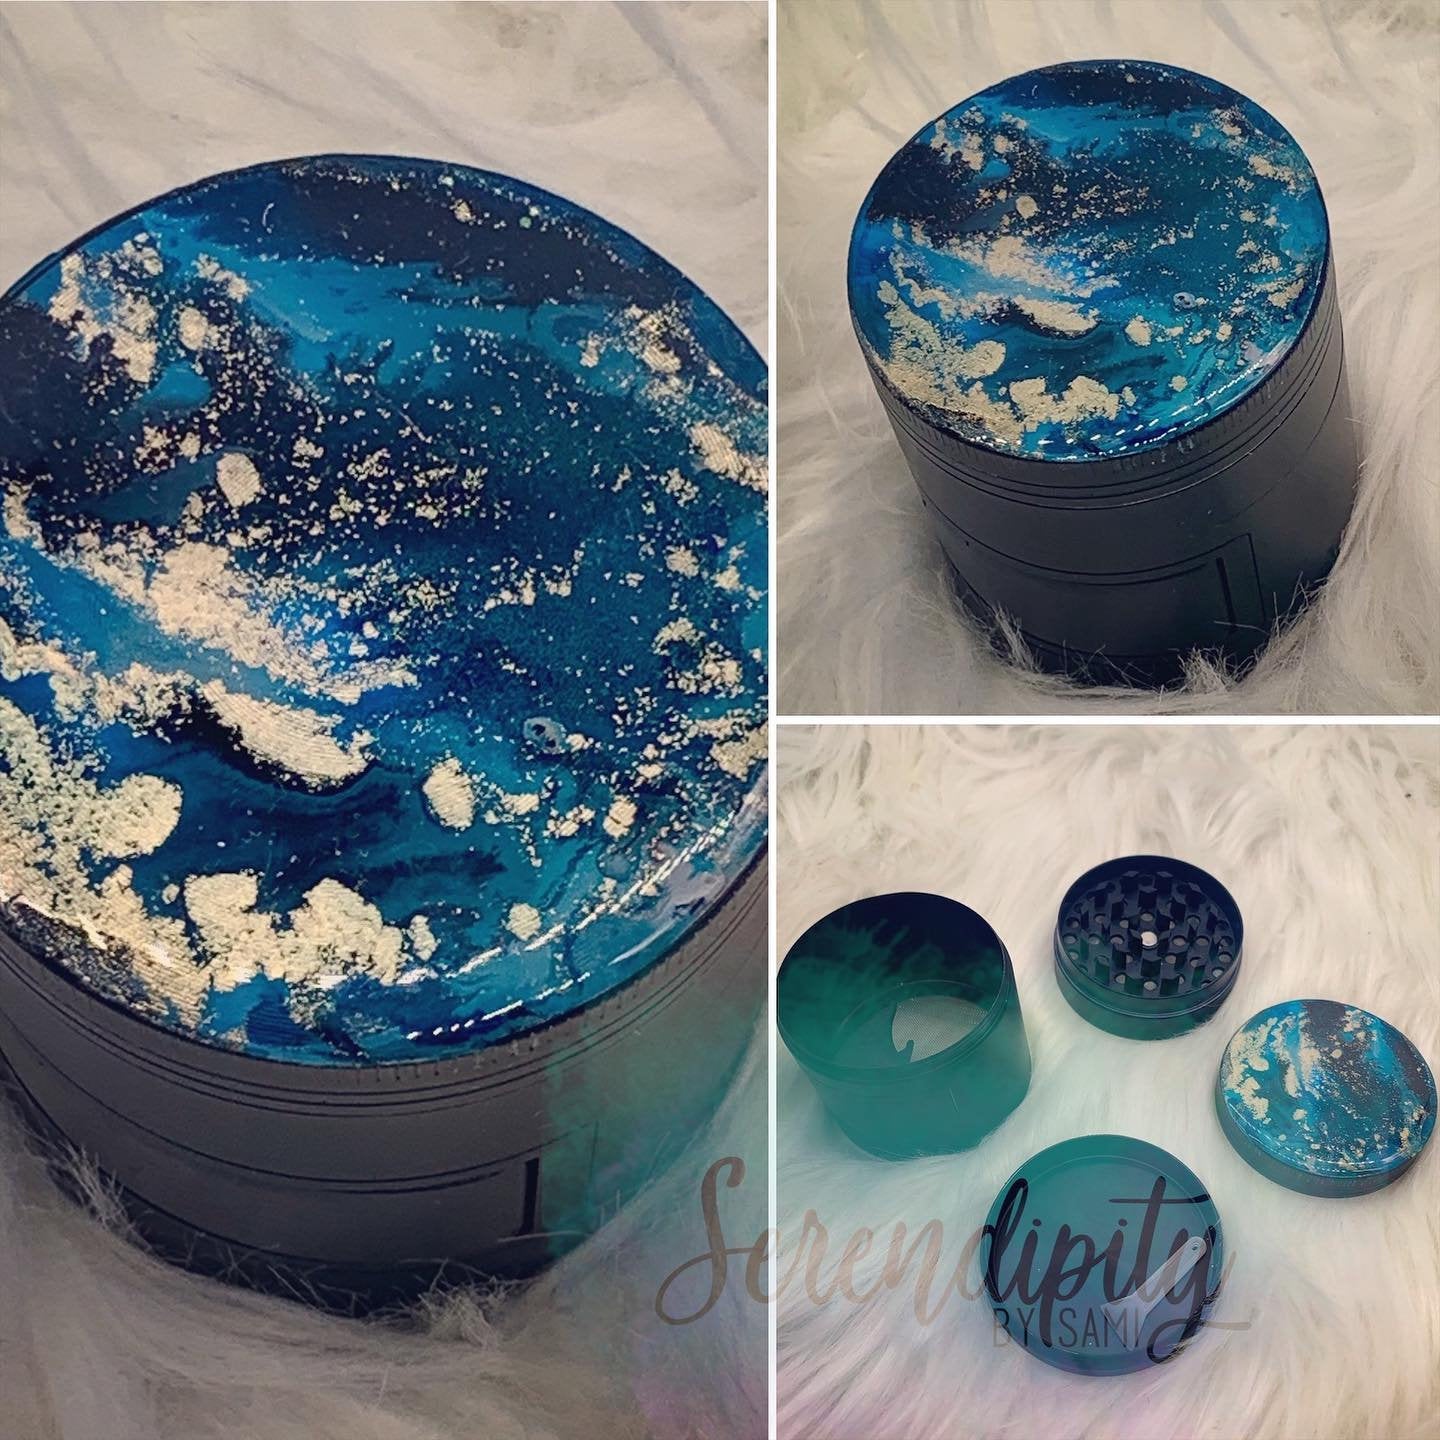 Wake-N-Bake Ceramic Ashtray